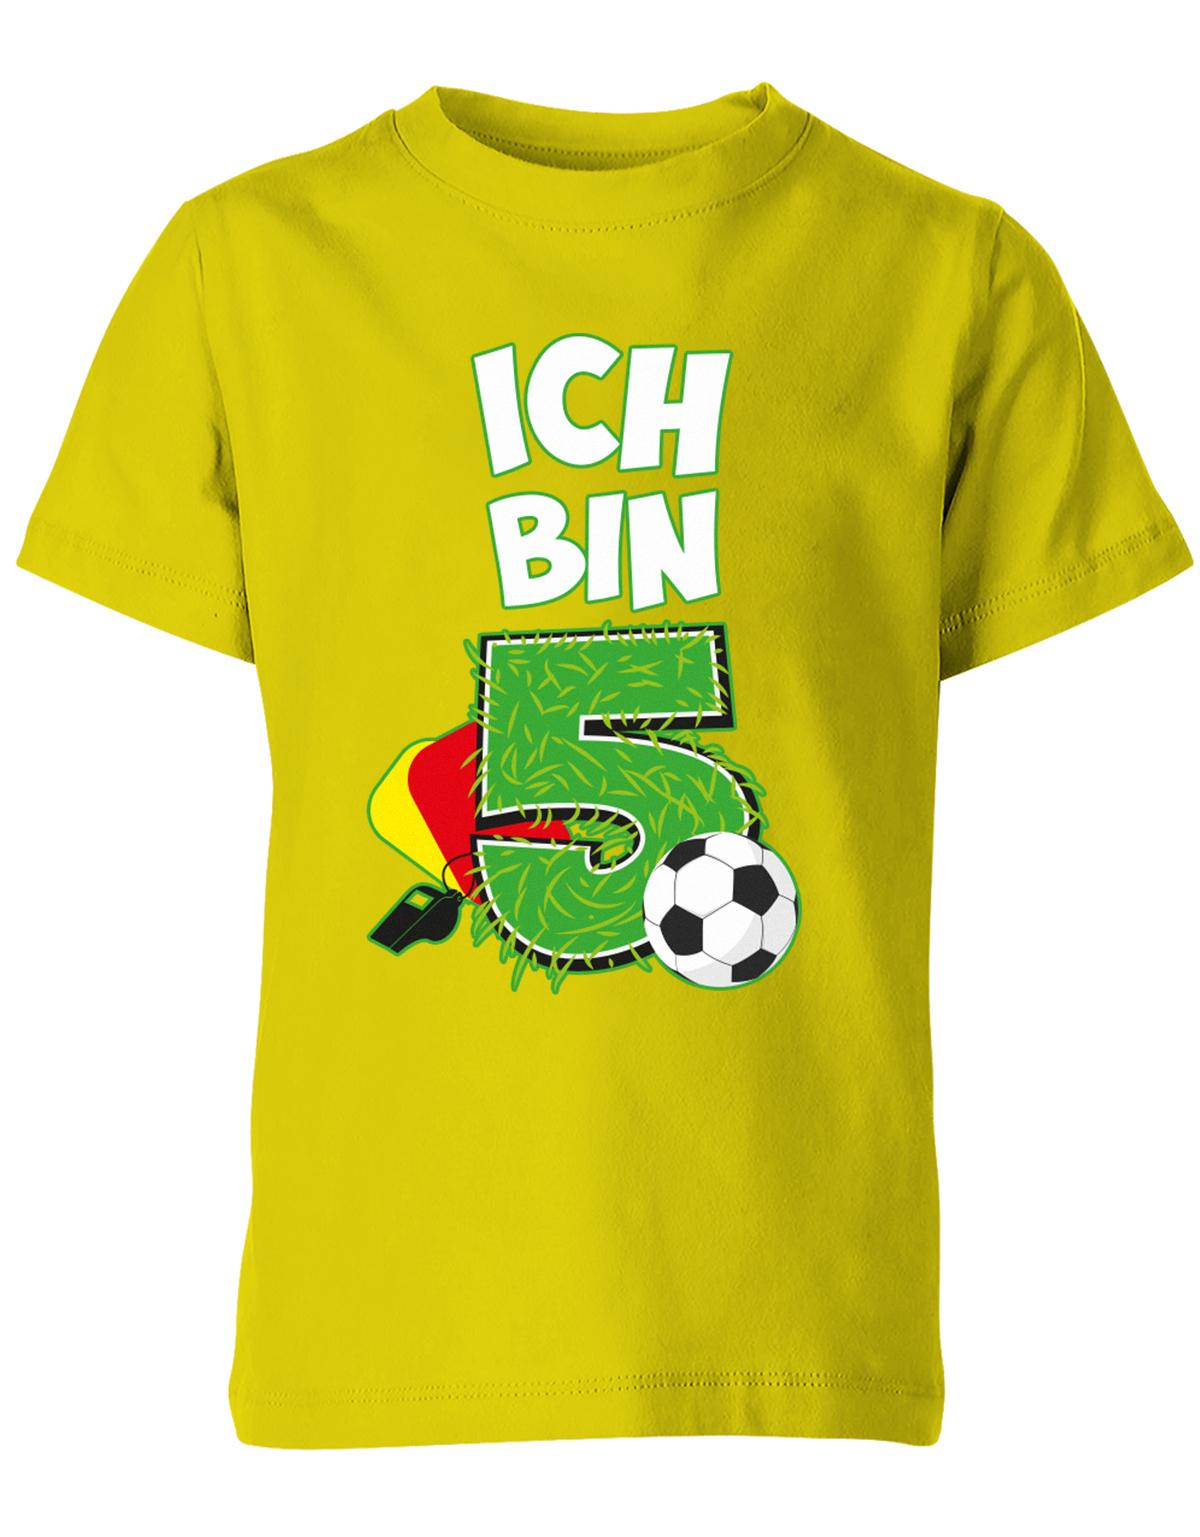 ich-bin-5-fussball-rote-gelbe-karte-geburtstag-fussballer-shirt-kinder-shirt-gelb